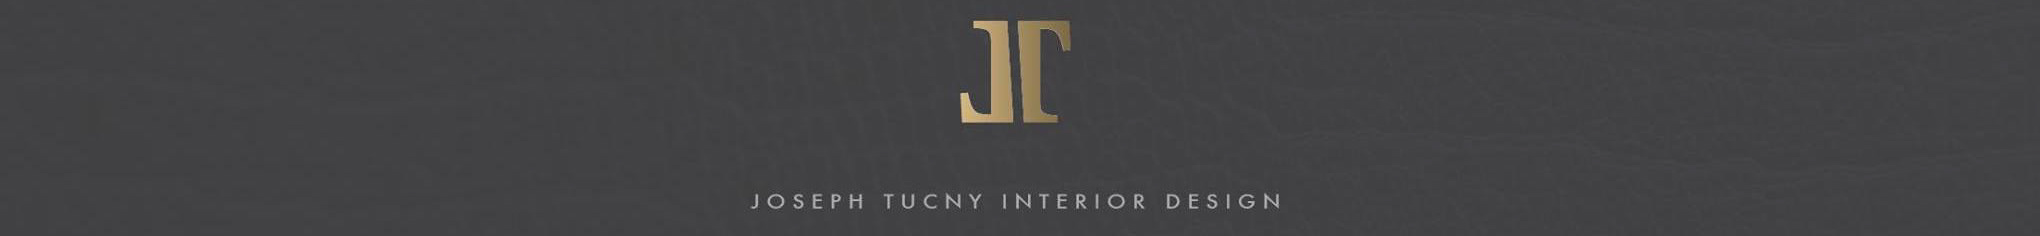 Joseph Tucny's profile banner